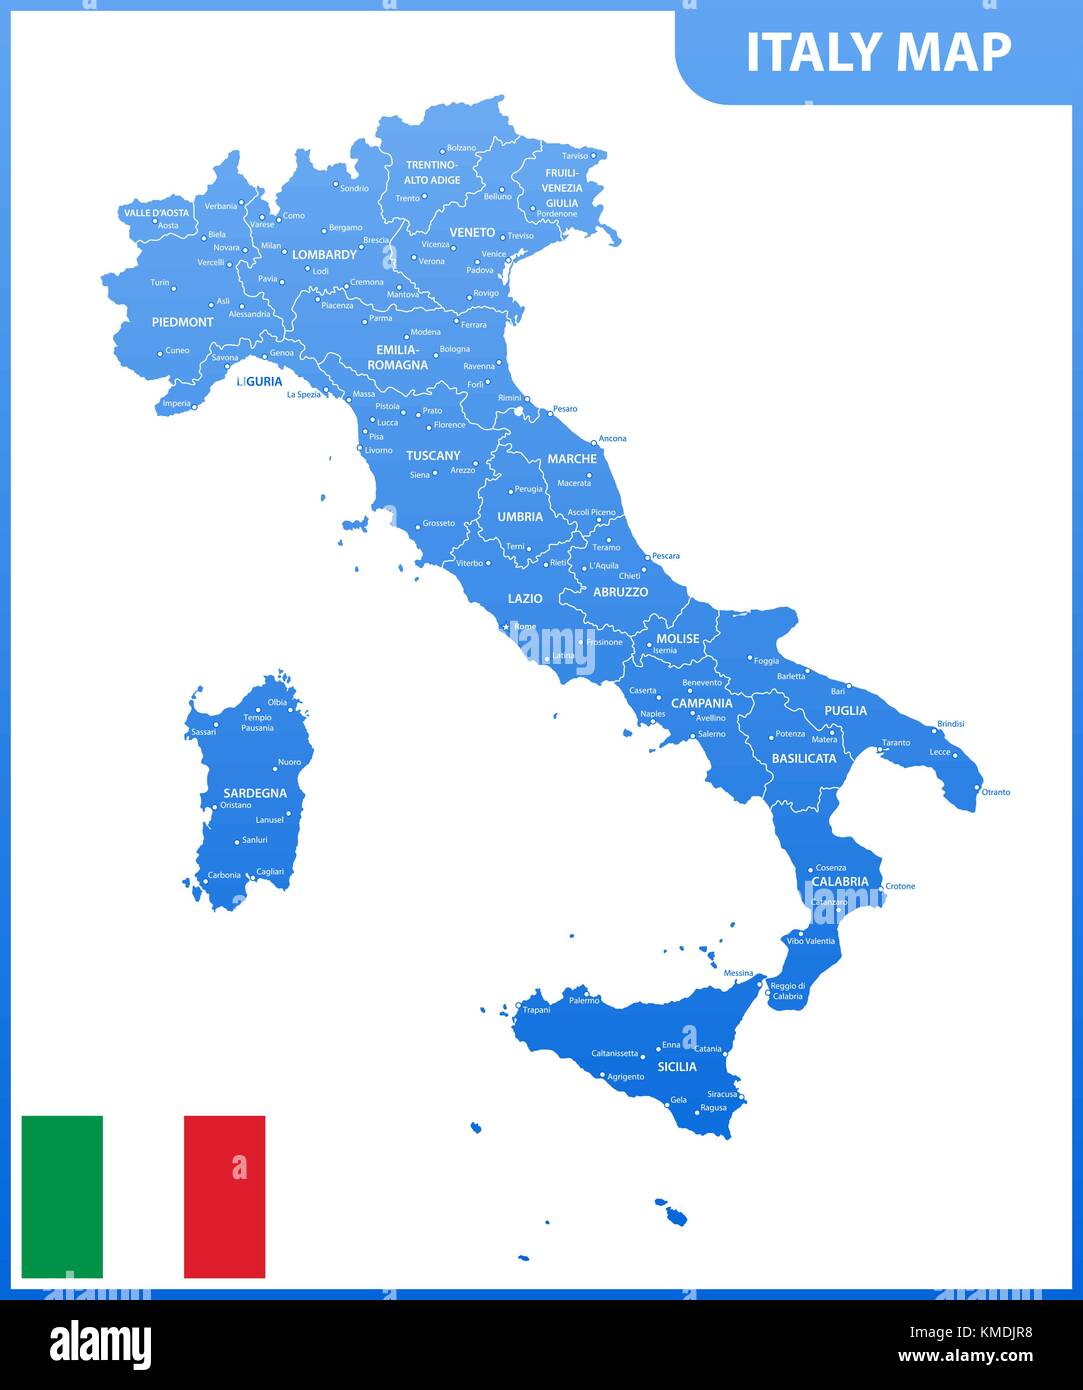 La carte détaillée de l'Italie avec les régions ou États et villes, capitale, drapeau national Illustration de Vecteur